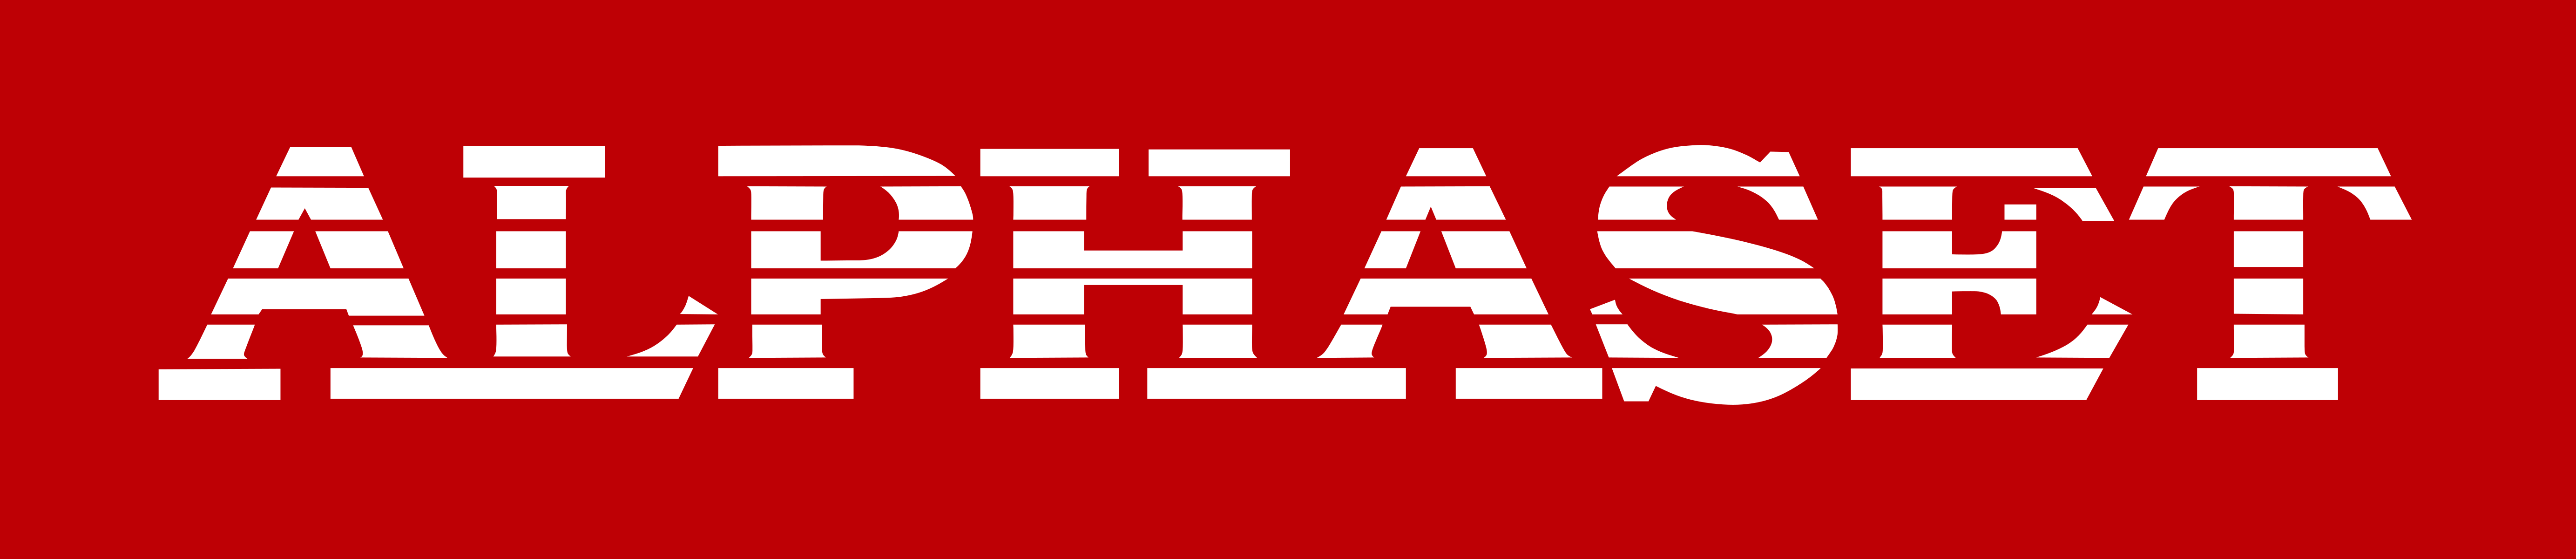 Alphaset Logo White on Red